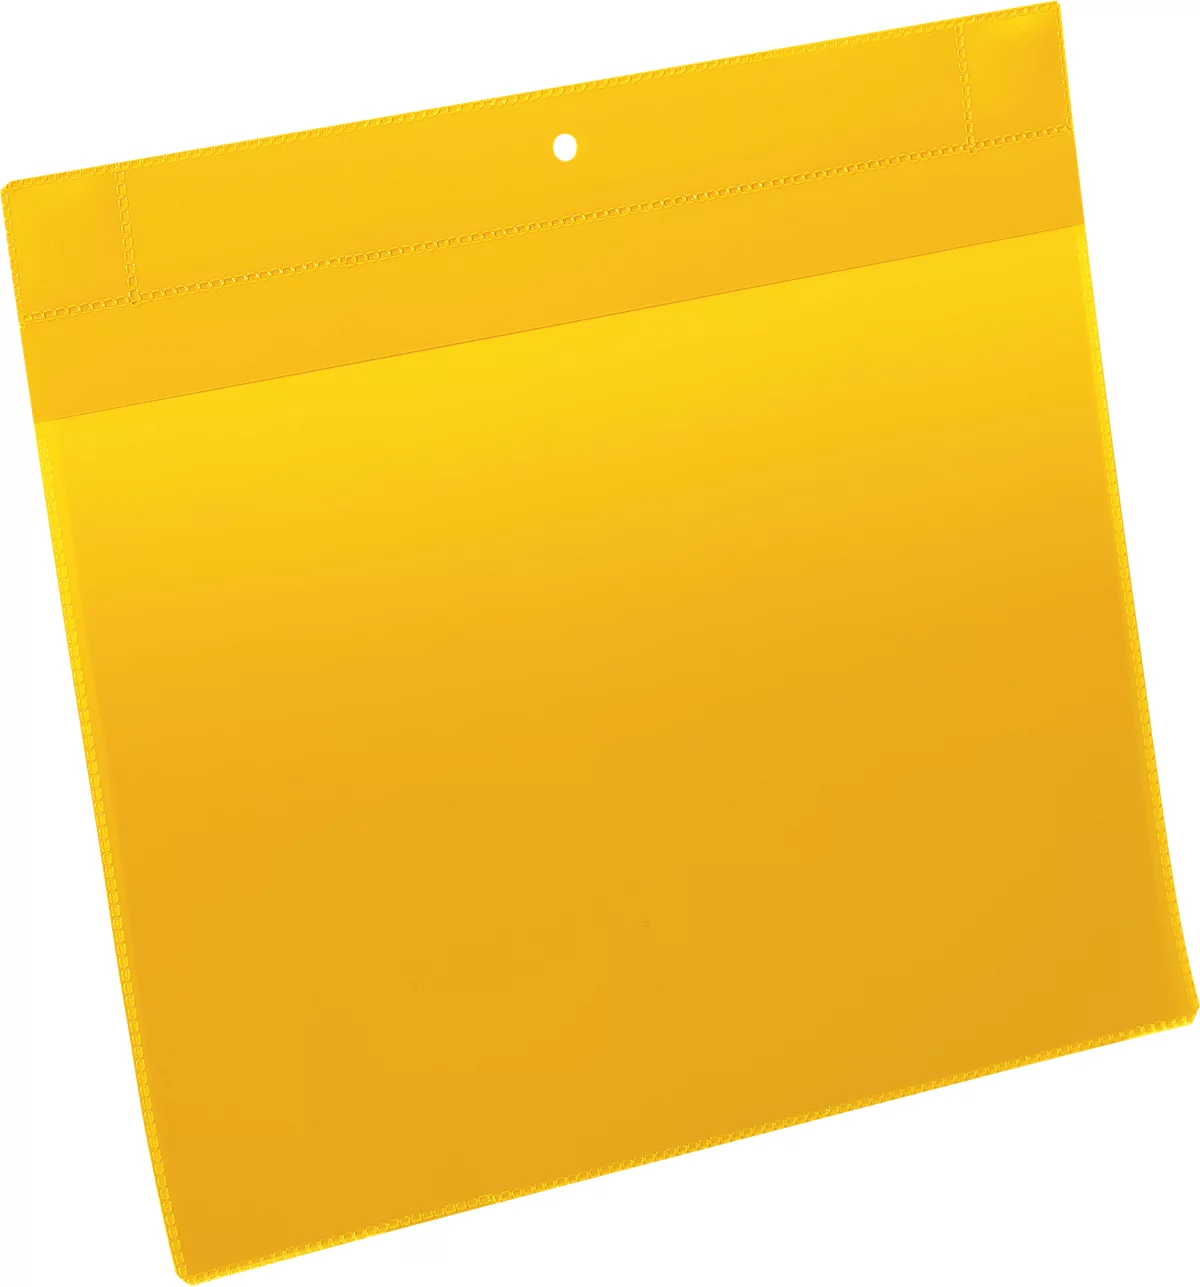 Neodym-Magnettaschen B 297 x 210 mm (A4 quer), 10 Stück, gelb